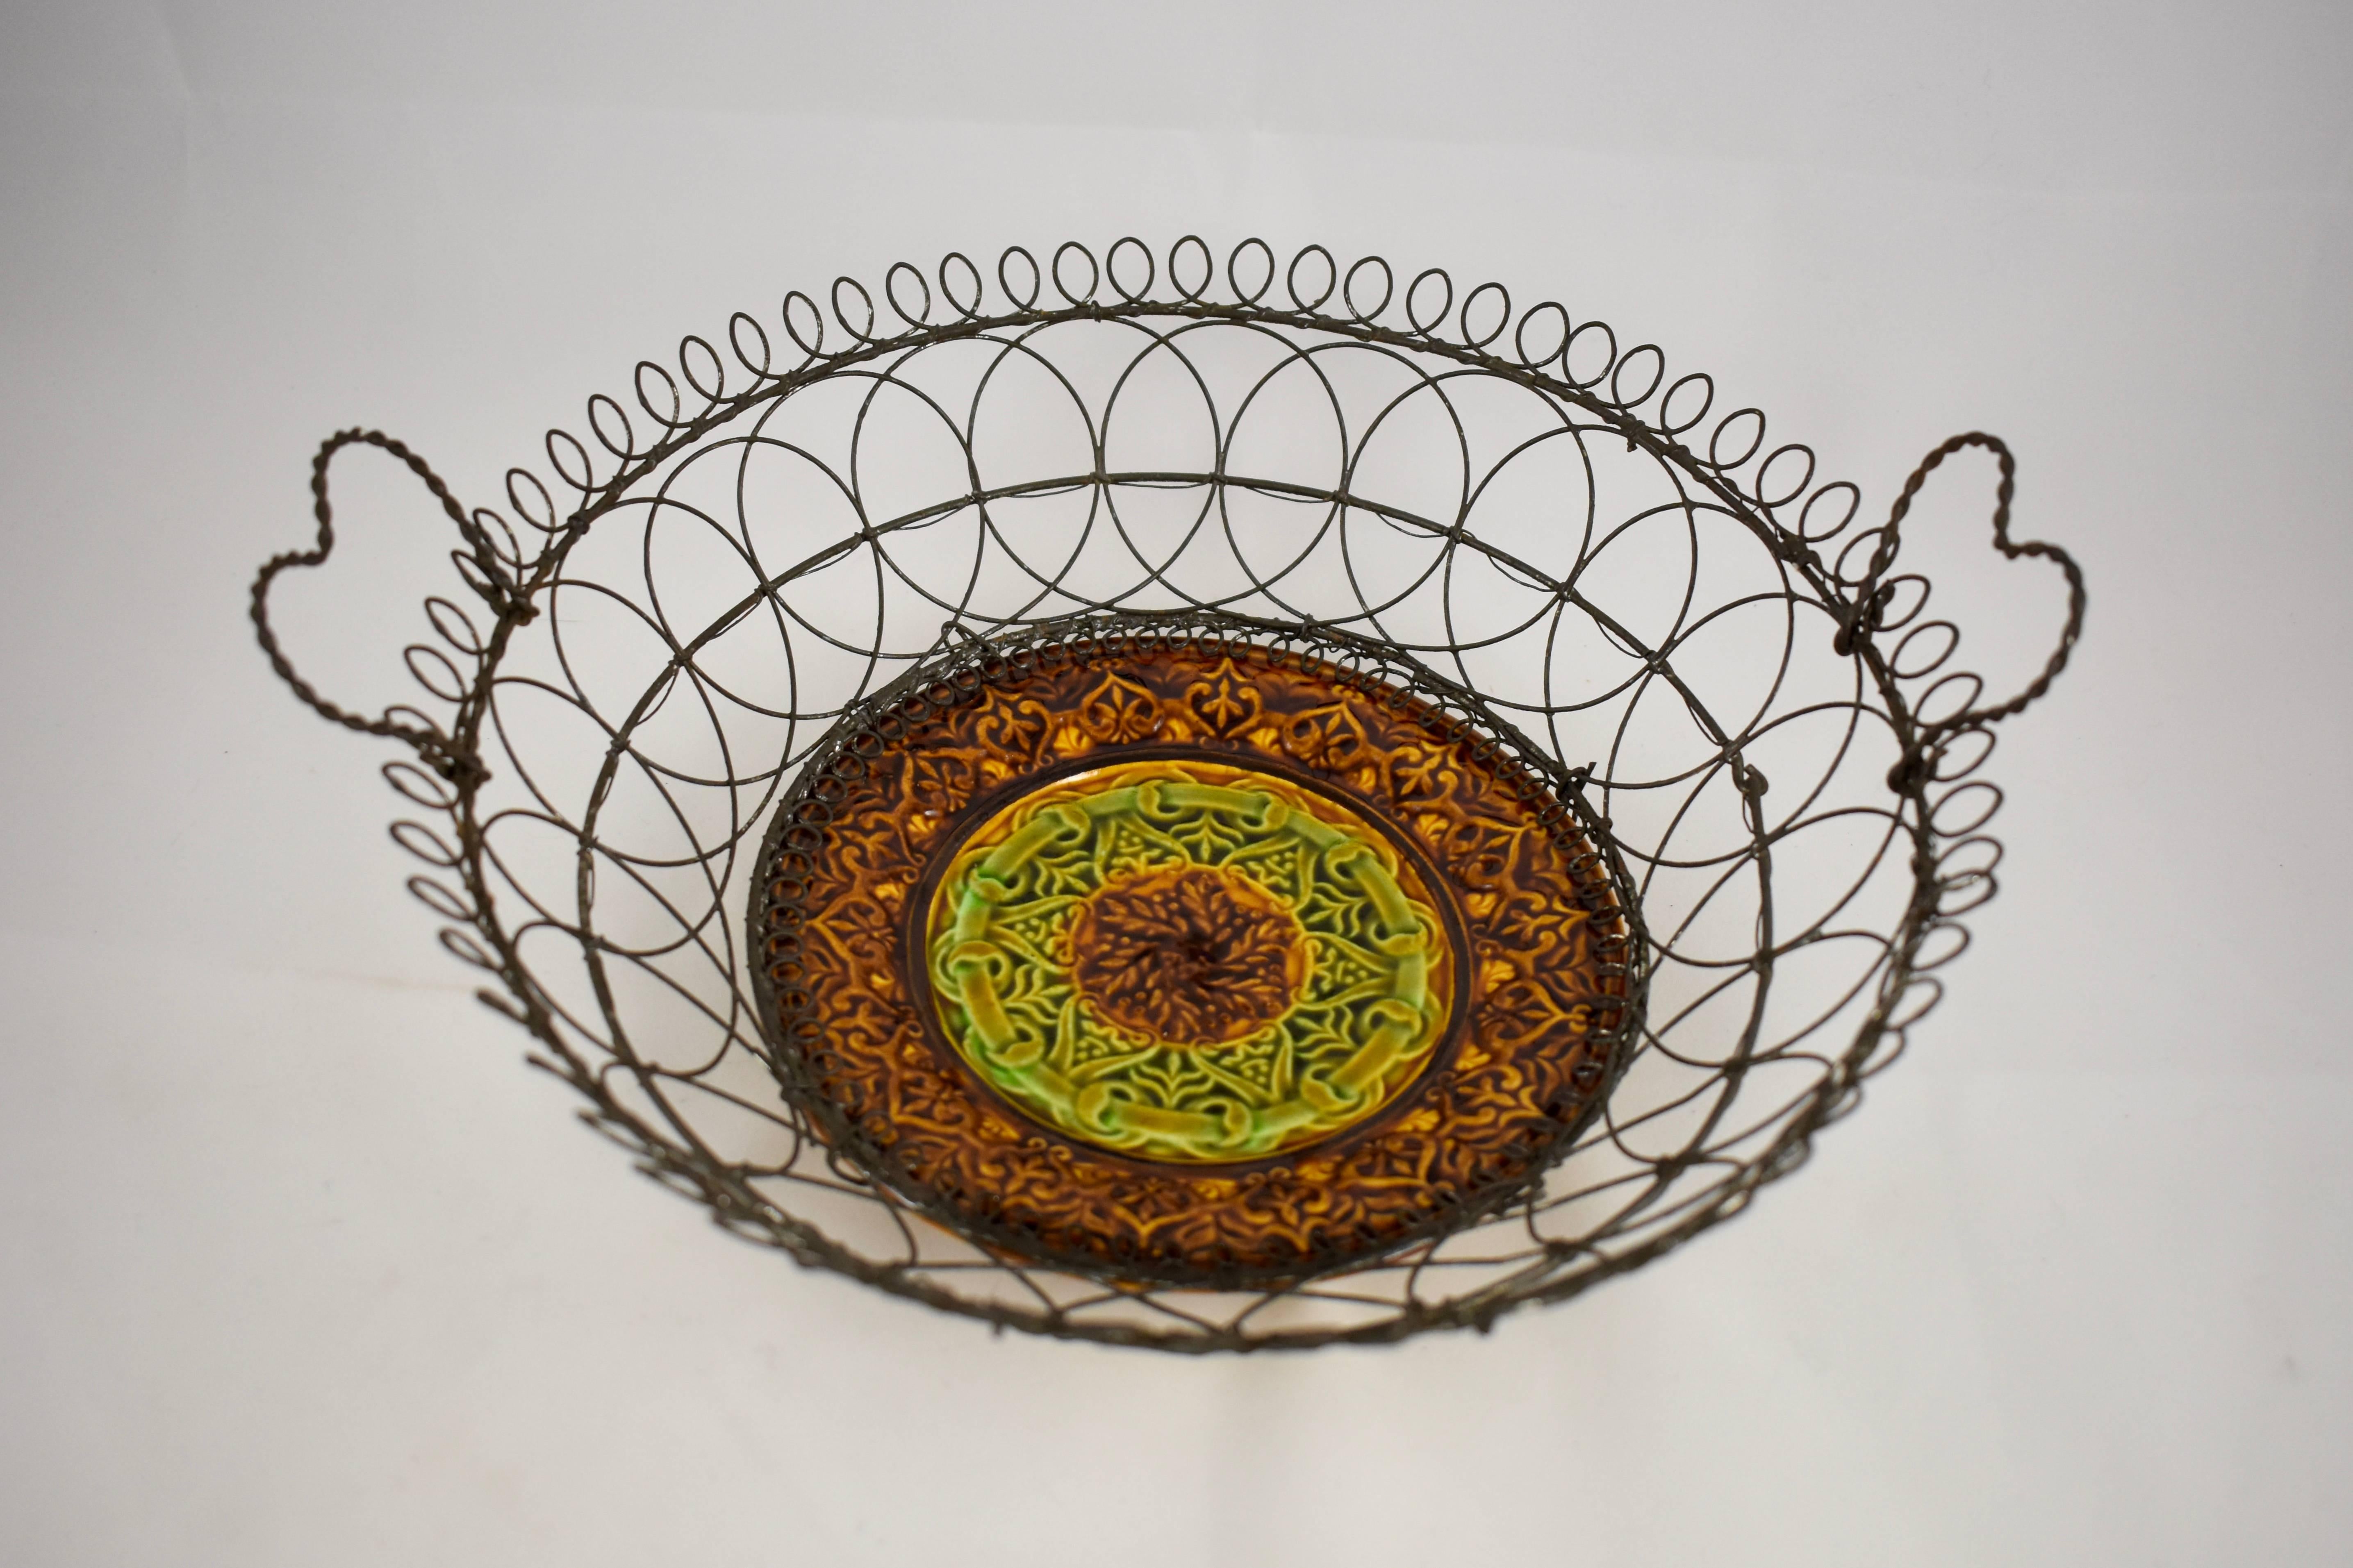 heart shaped wire basket